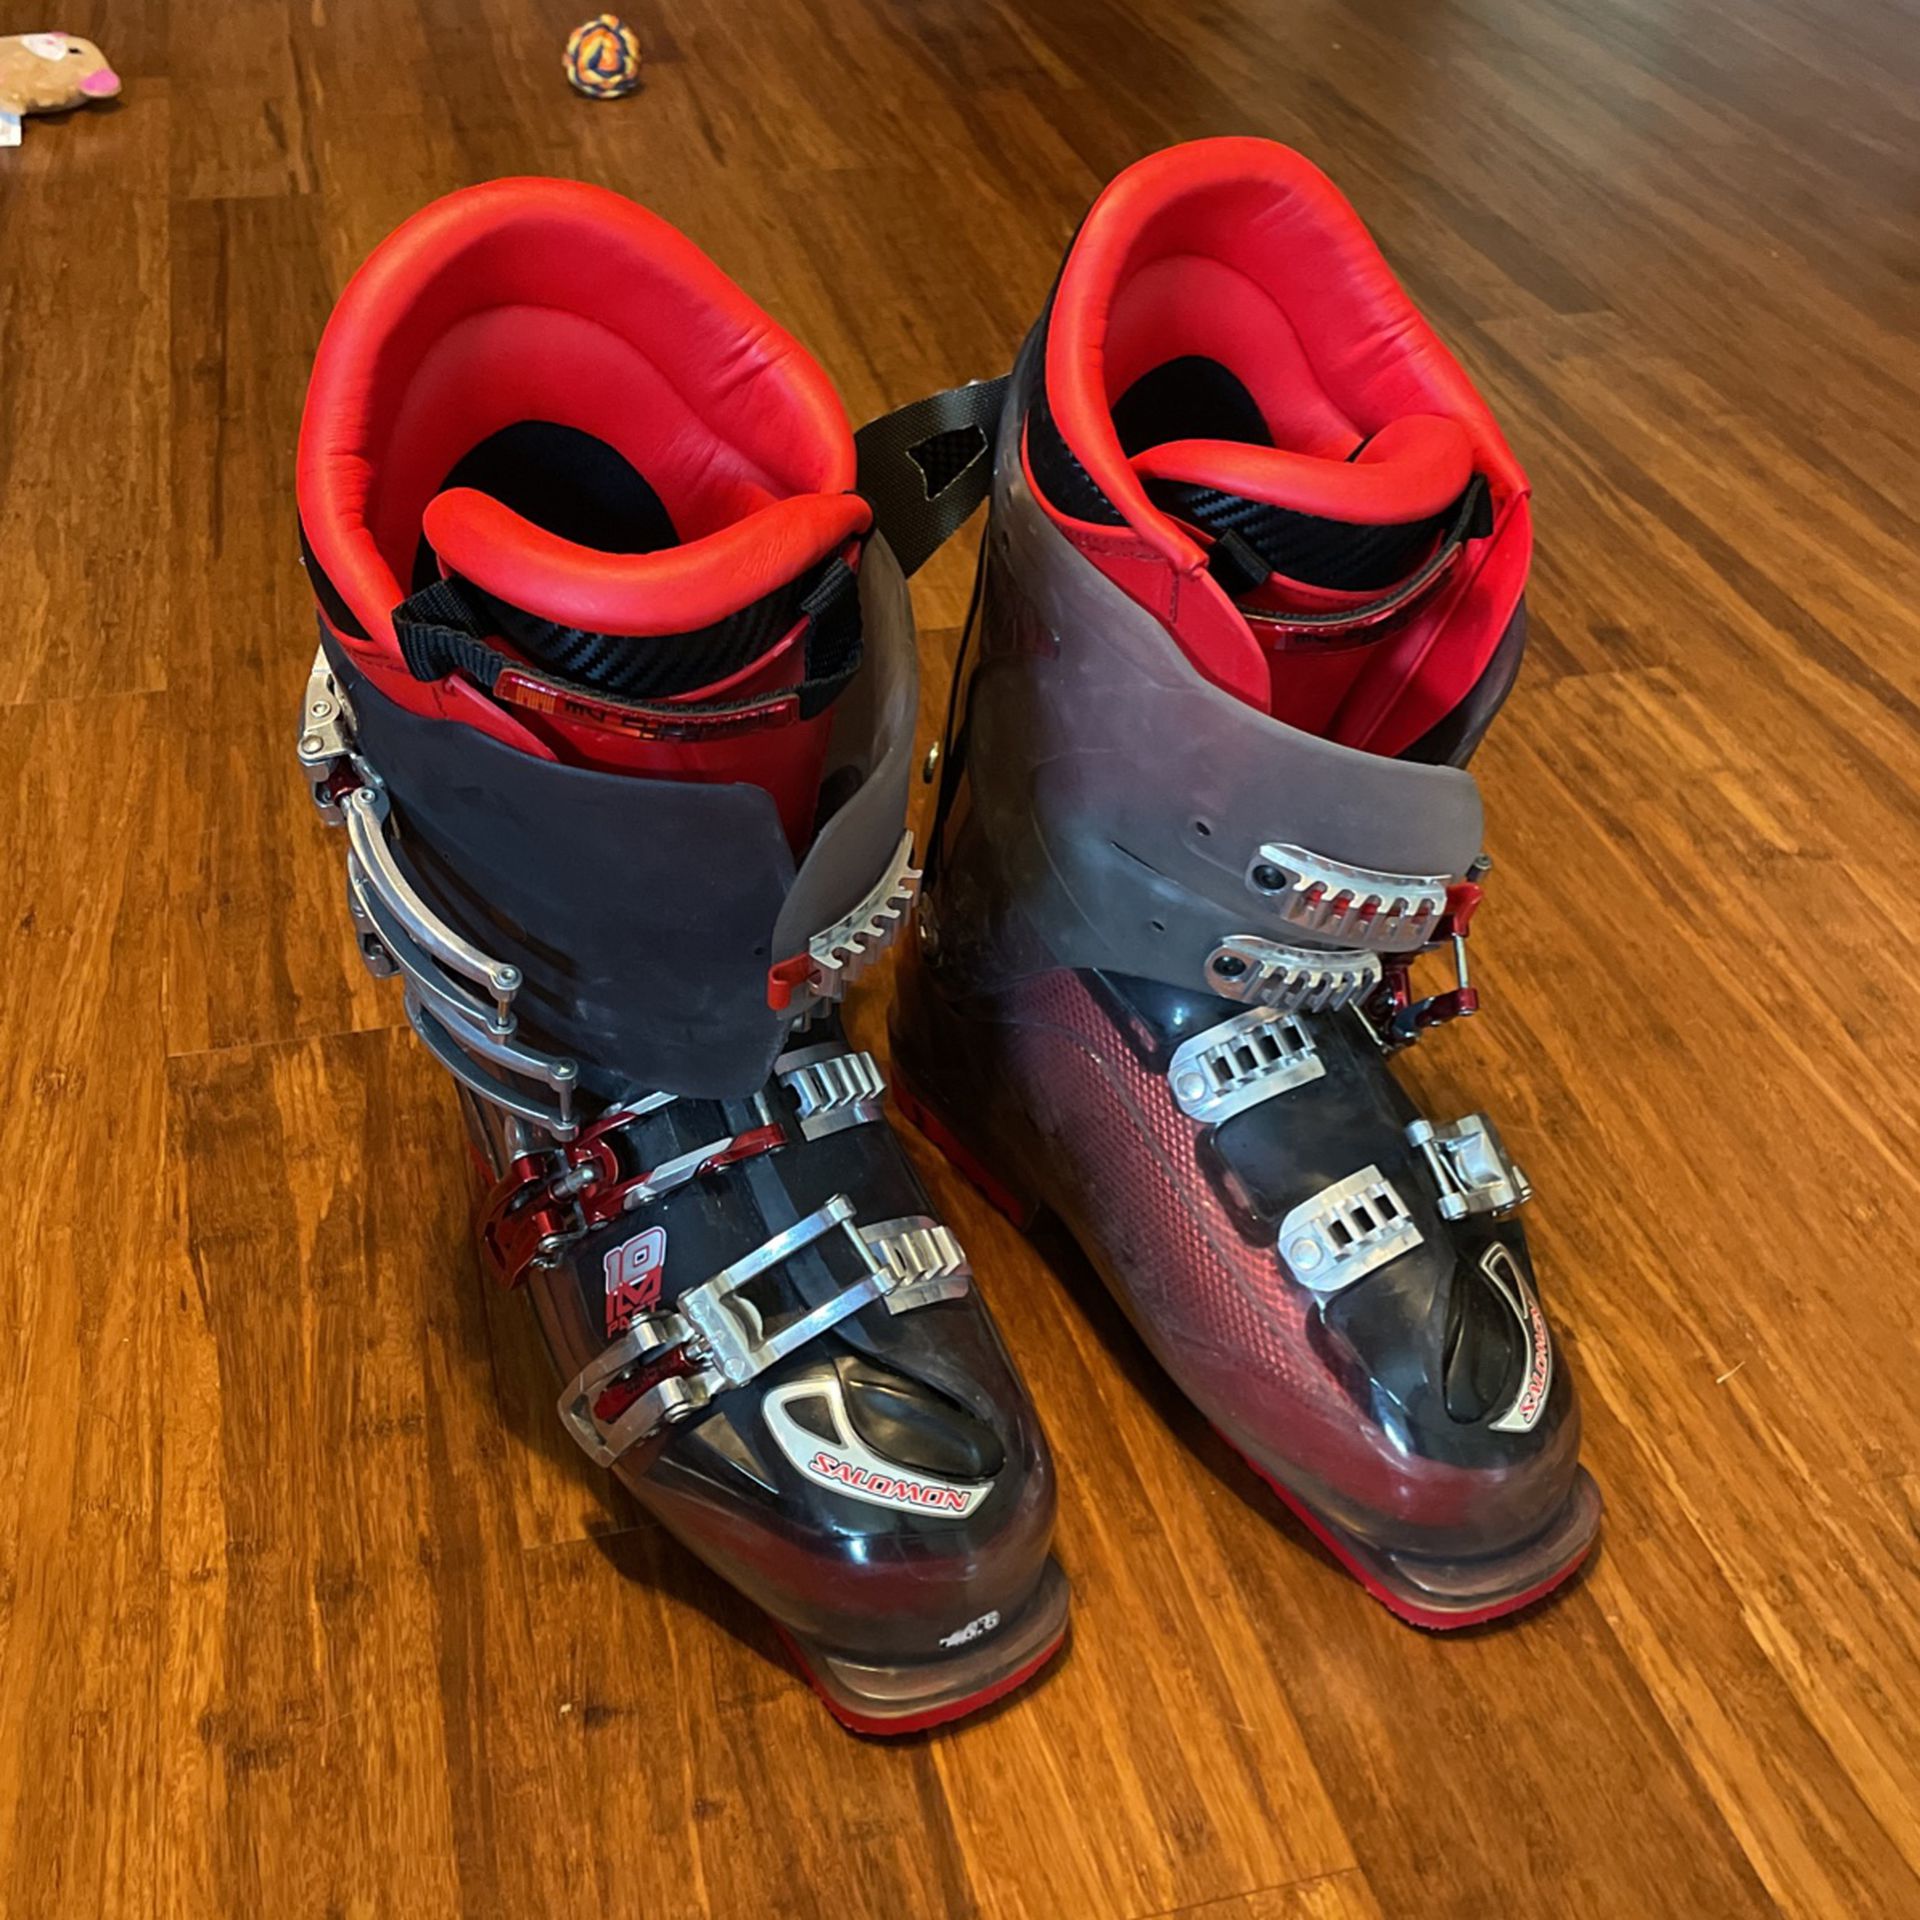 Salomon Ski Boots For Sale